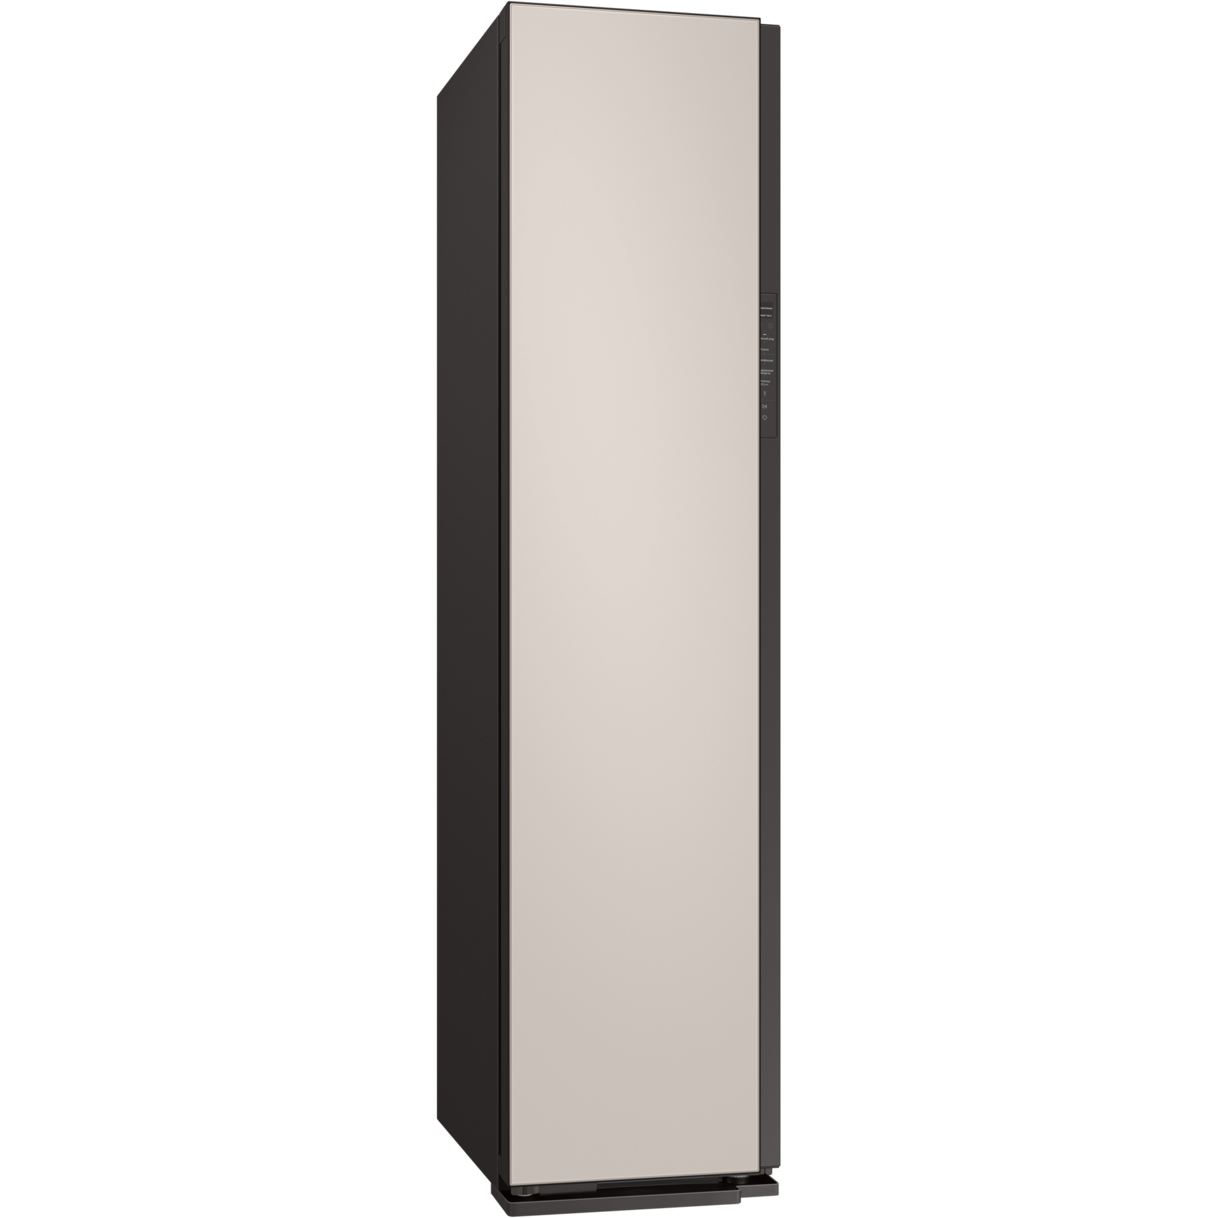 Паровой шкаф Samsung DF60A8500EG матово-бежевый, цвет черный - фото 2